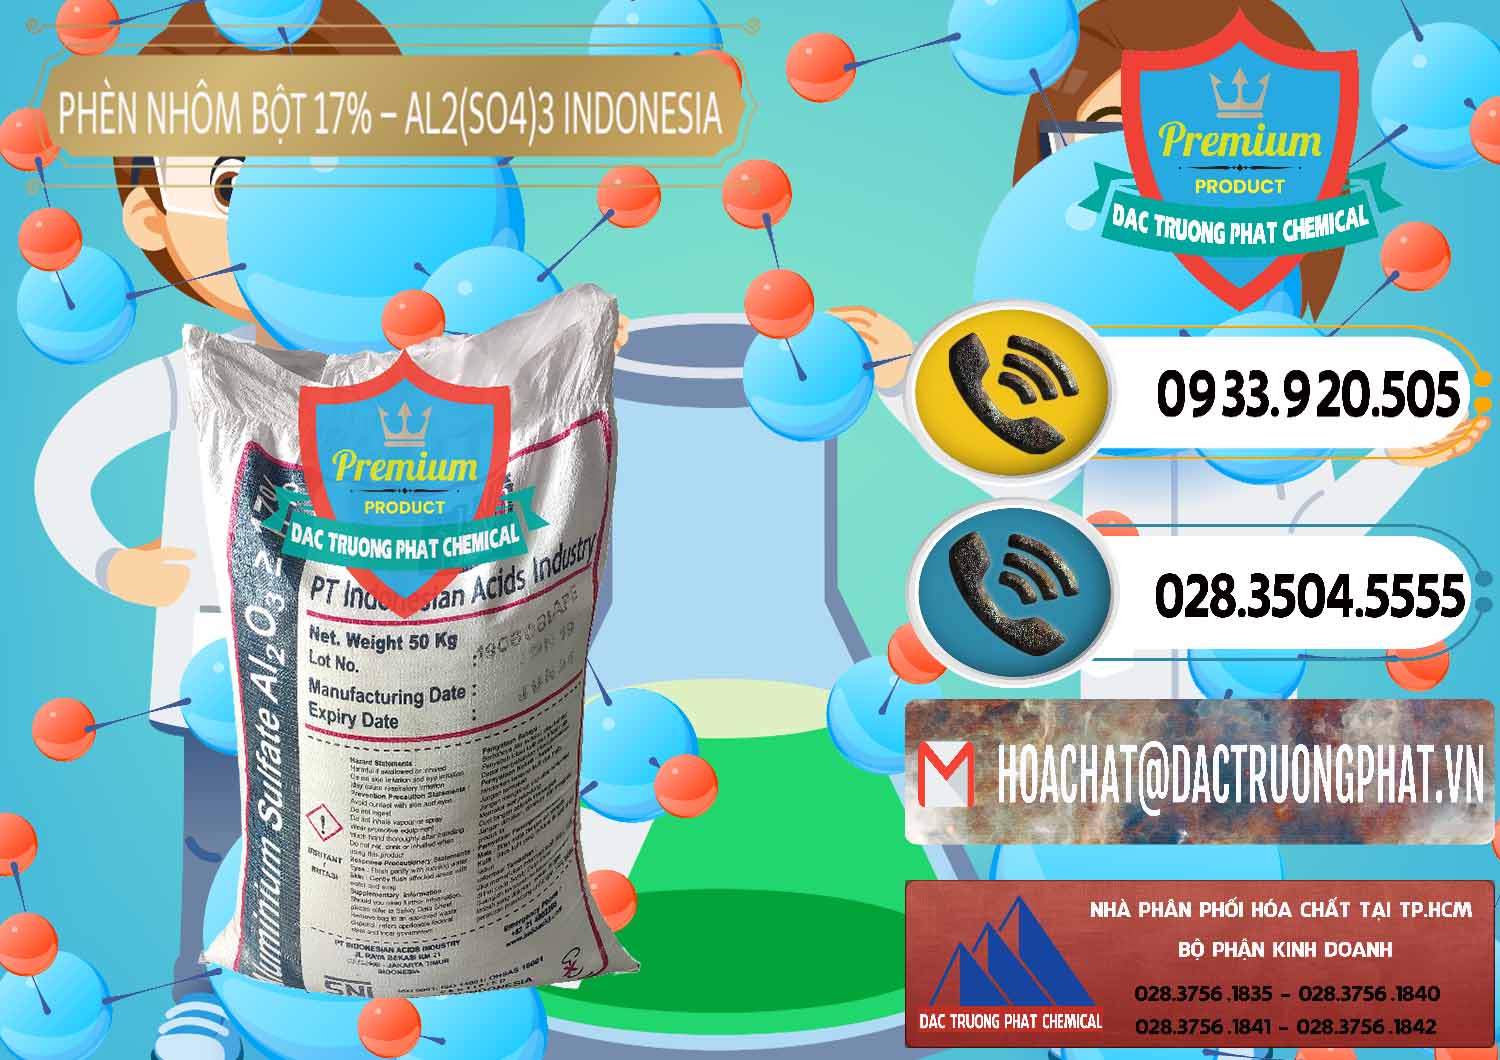 Cty chuyên bán - cung ứng Phèn Nhôm Bột - Al2(SO4)3 17% bao 50kg Indonesia - 0112 - Đơn vị chuyên bán ( phân phối ) hóa chất tại TP.HCM - hoachatdetnhuom.vn